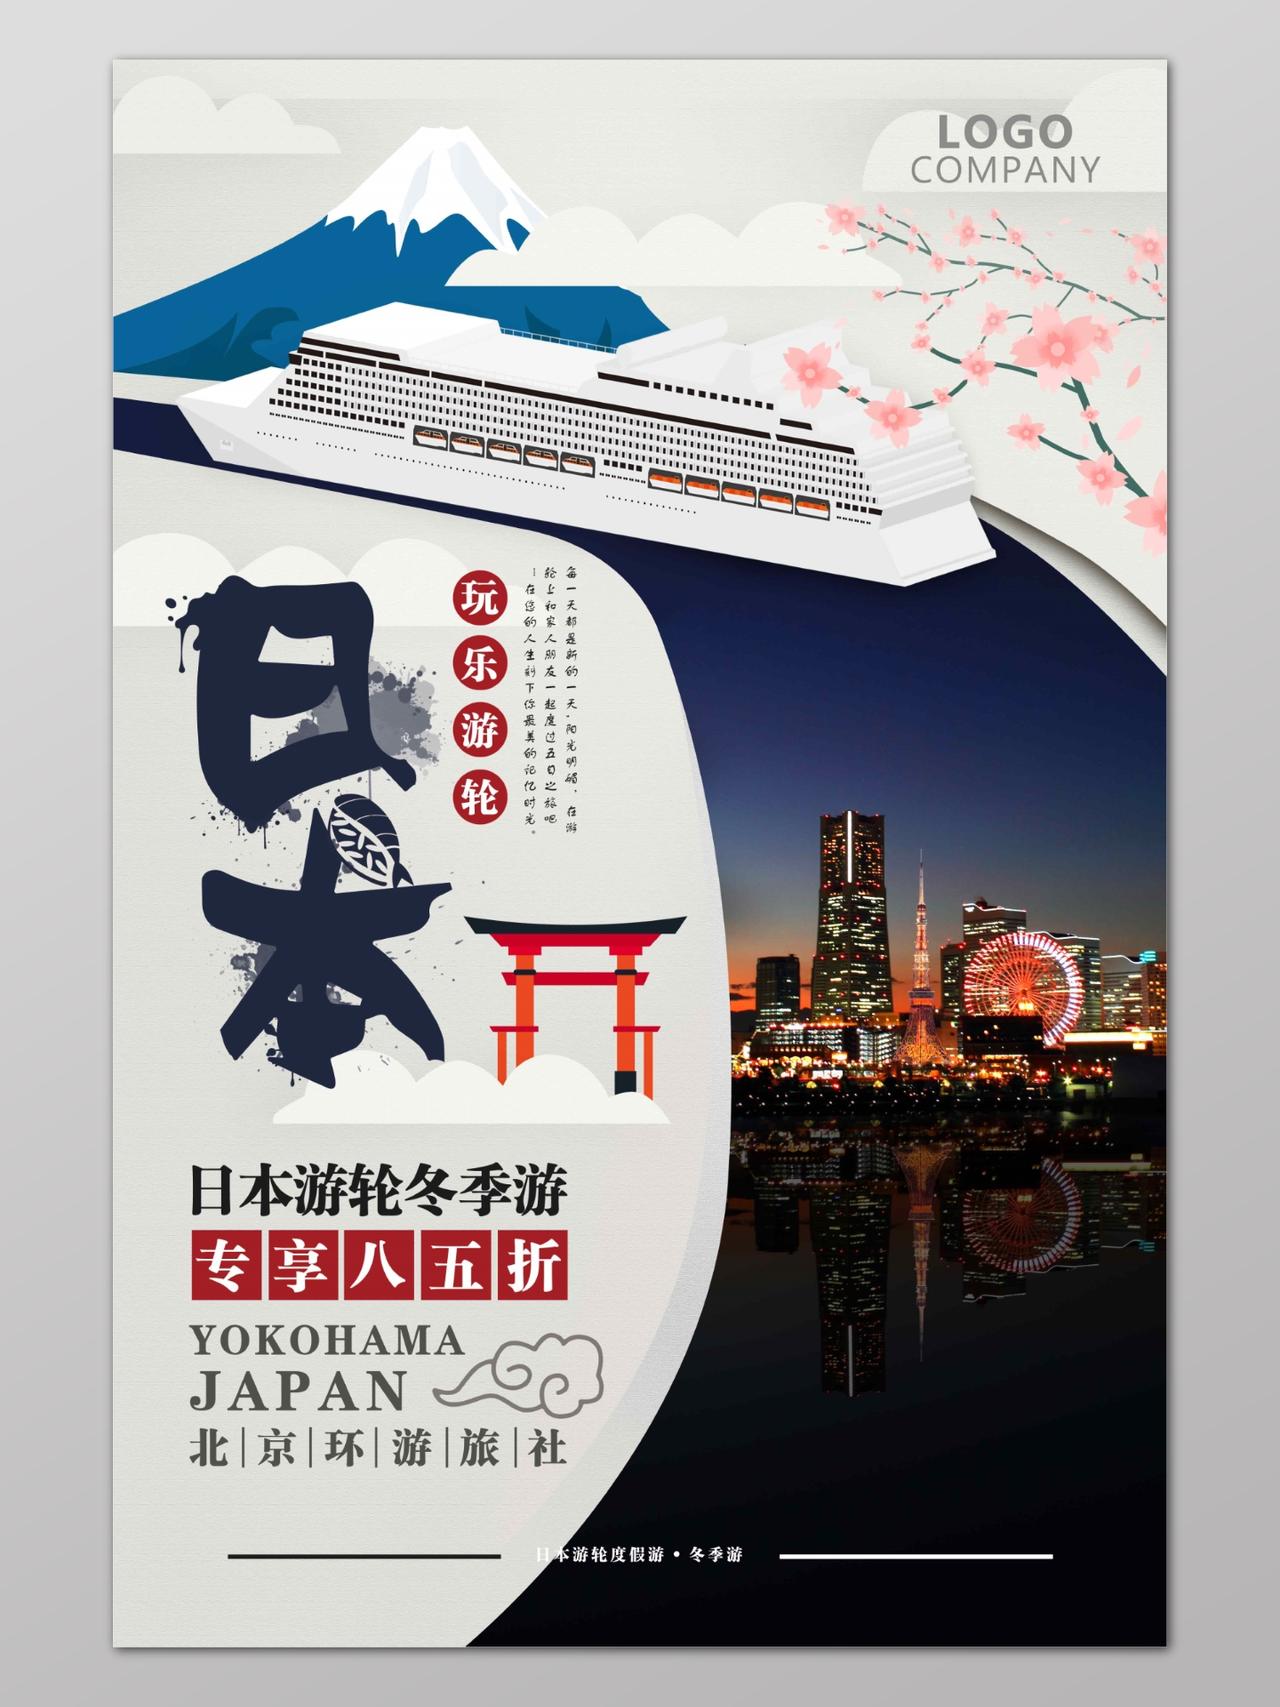 游轮旅游日本宣传海报设计